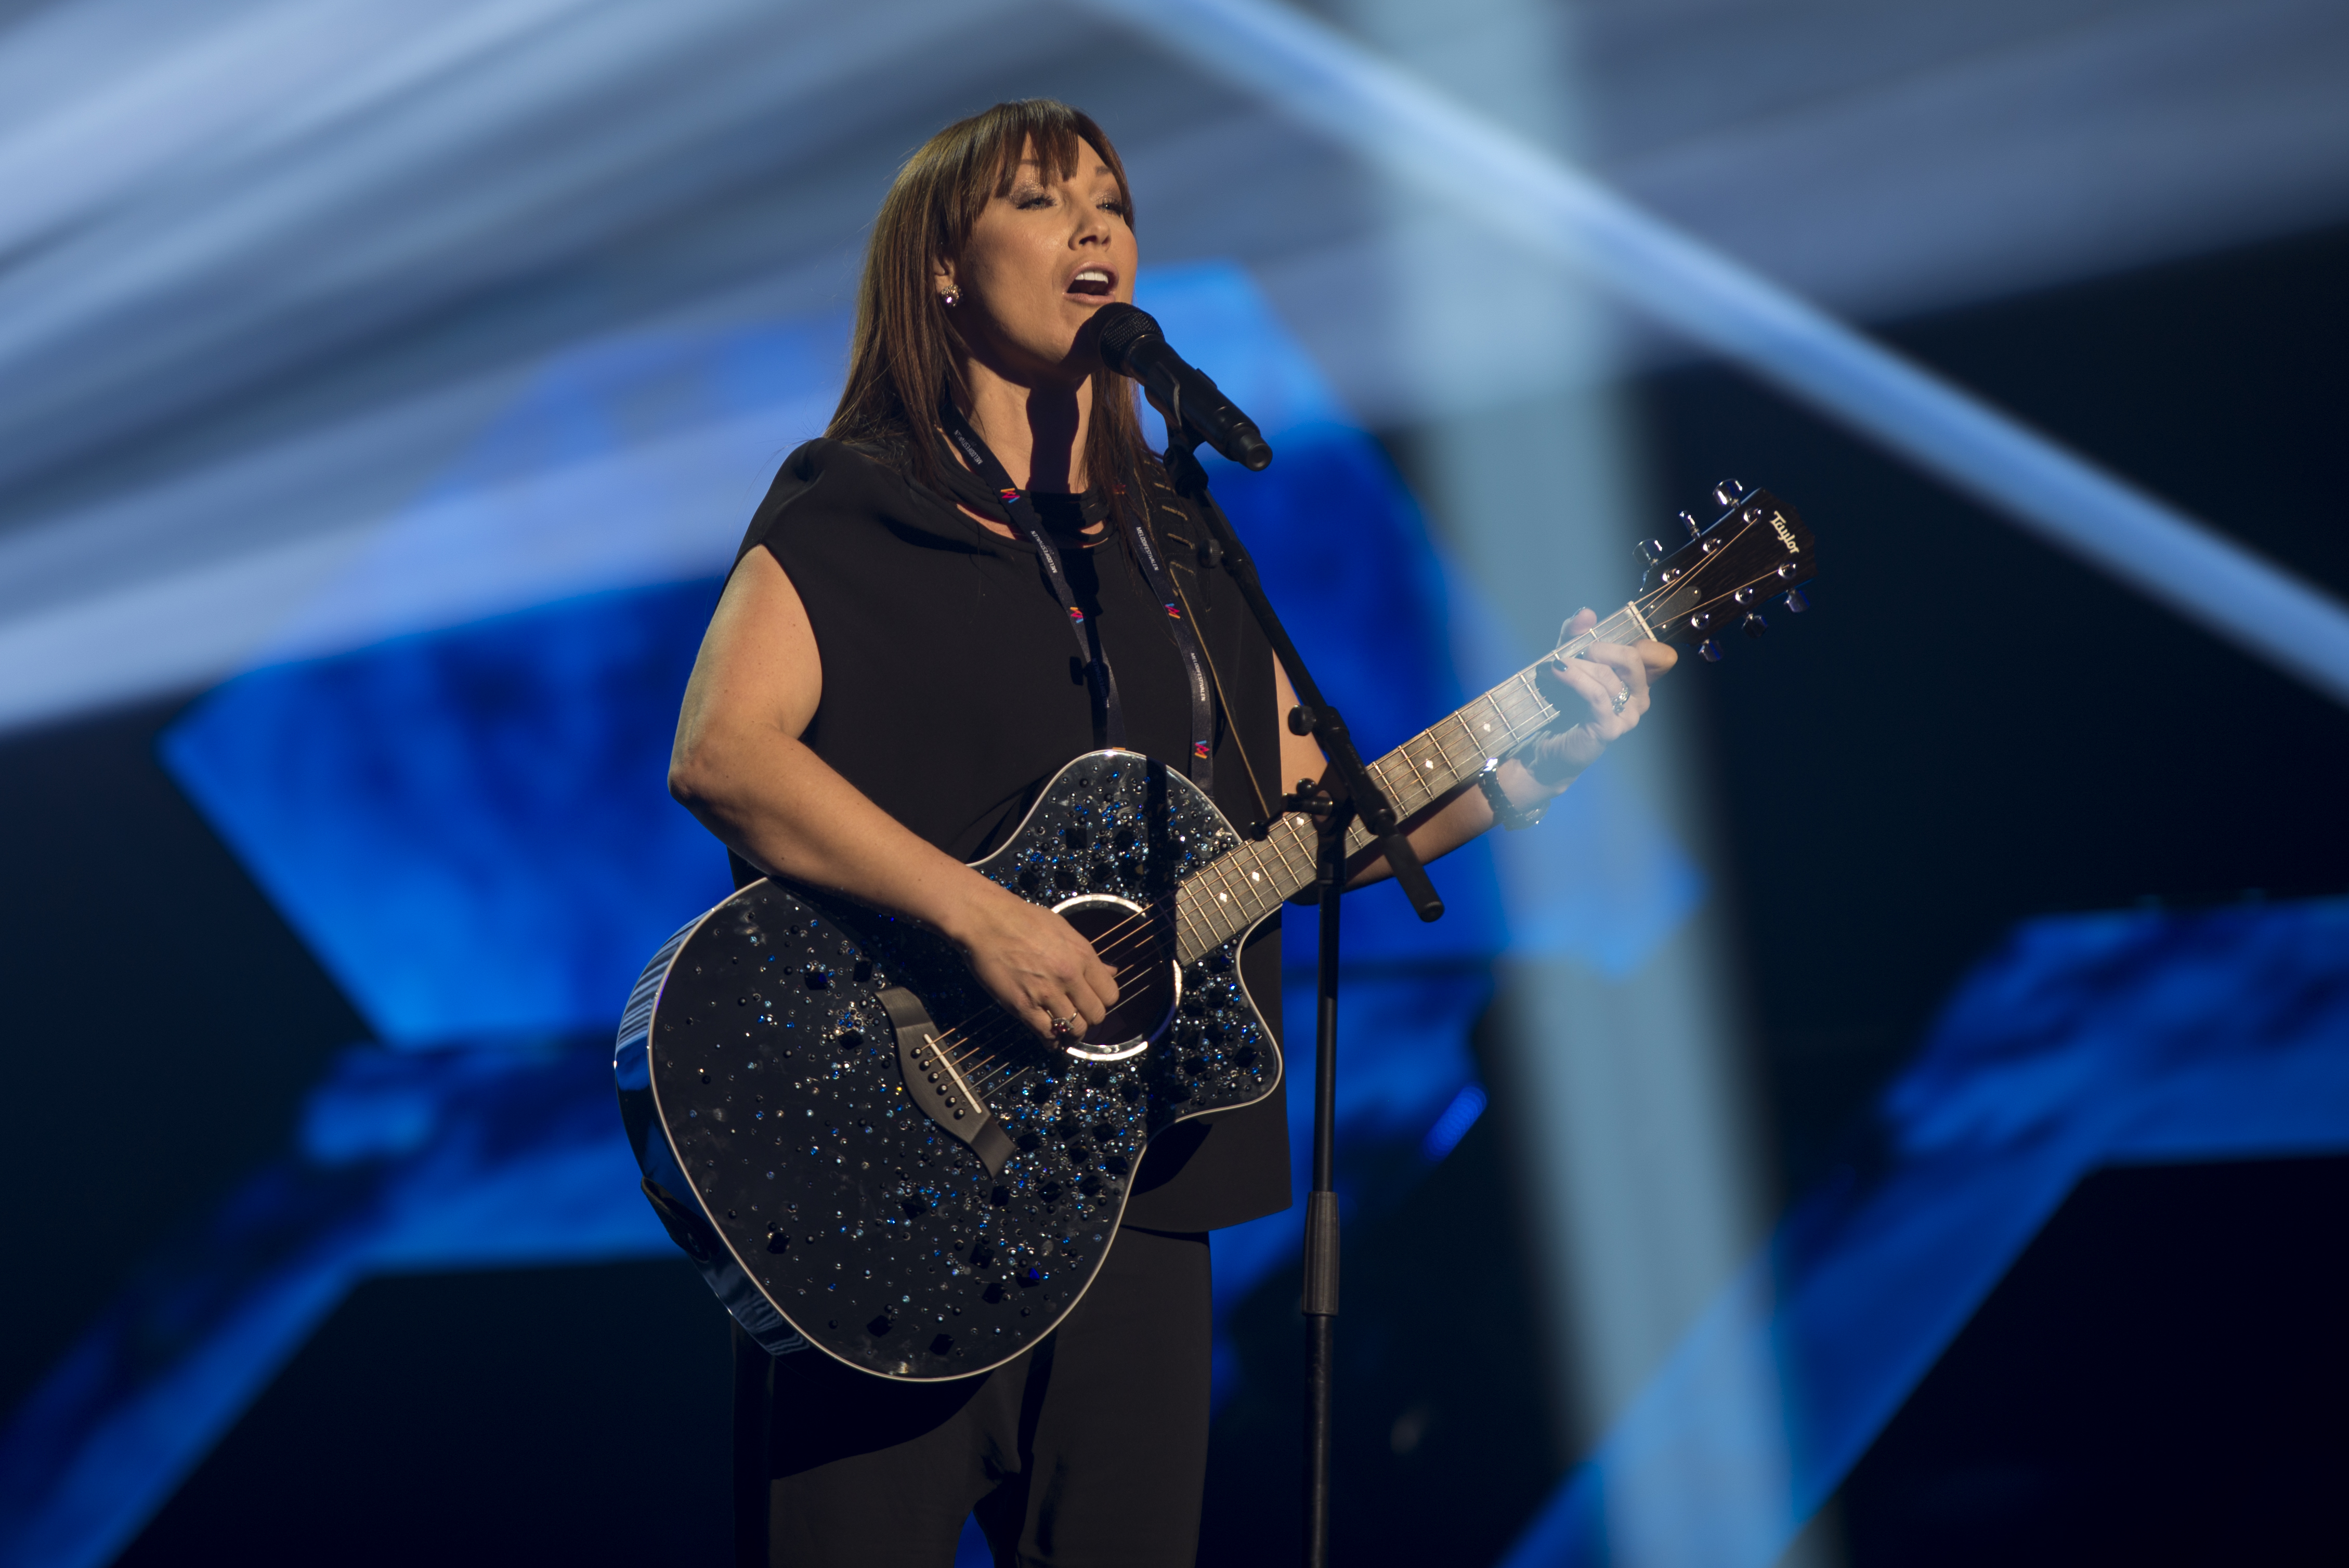 Fil:Charlotte Perrelli, Melodifestivalen 2017, Göteborg 09.jpg – Wikipedia